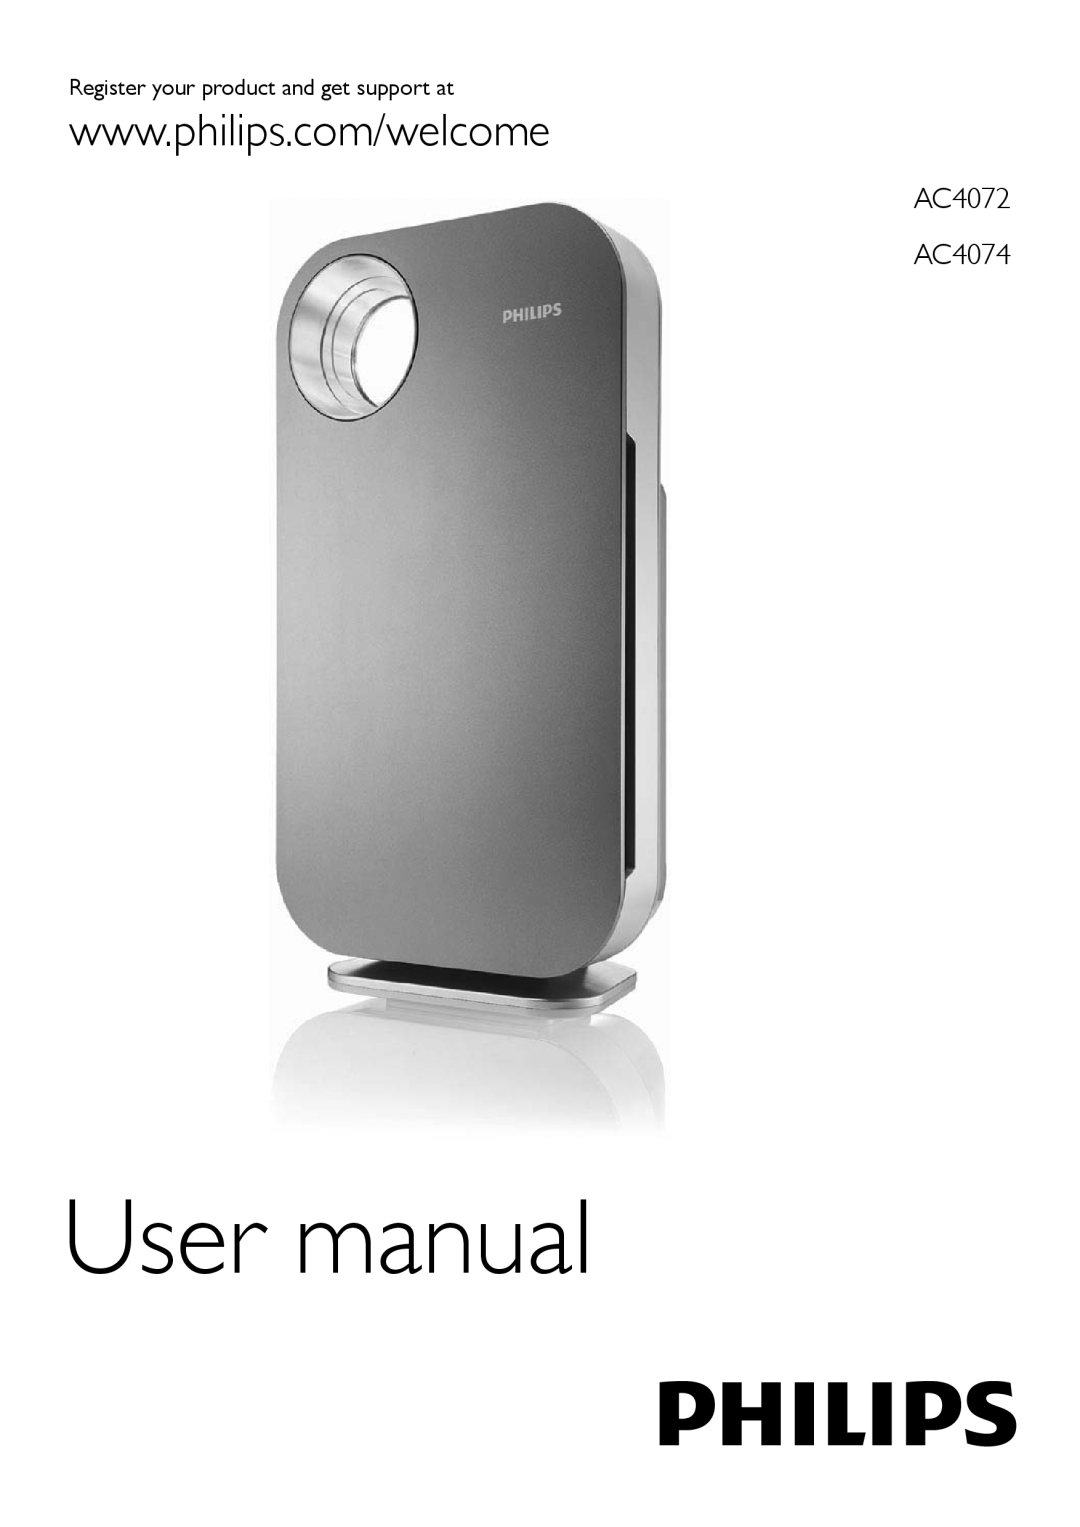 Philips user manual User manual, AC4072 AC4074 